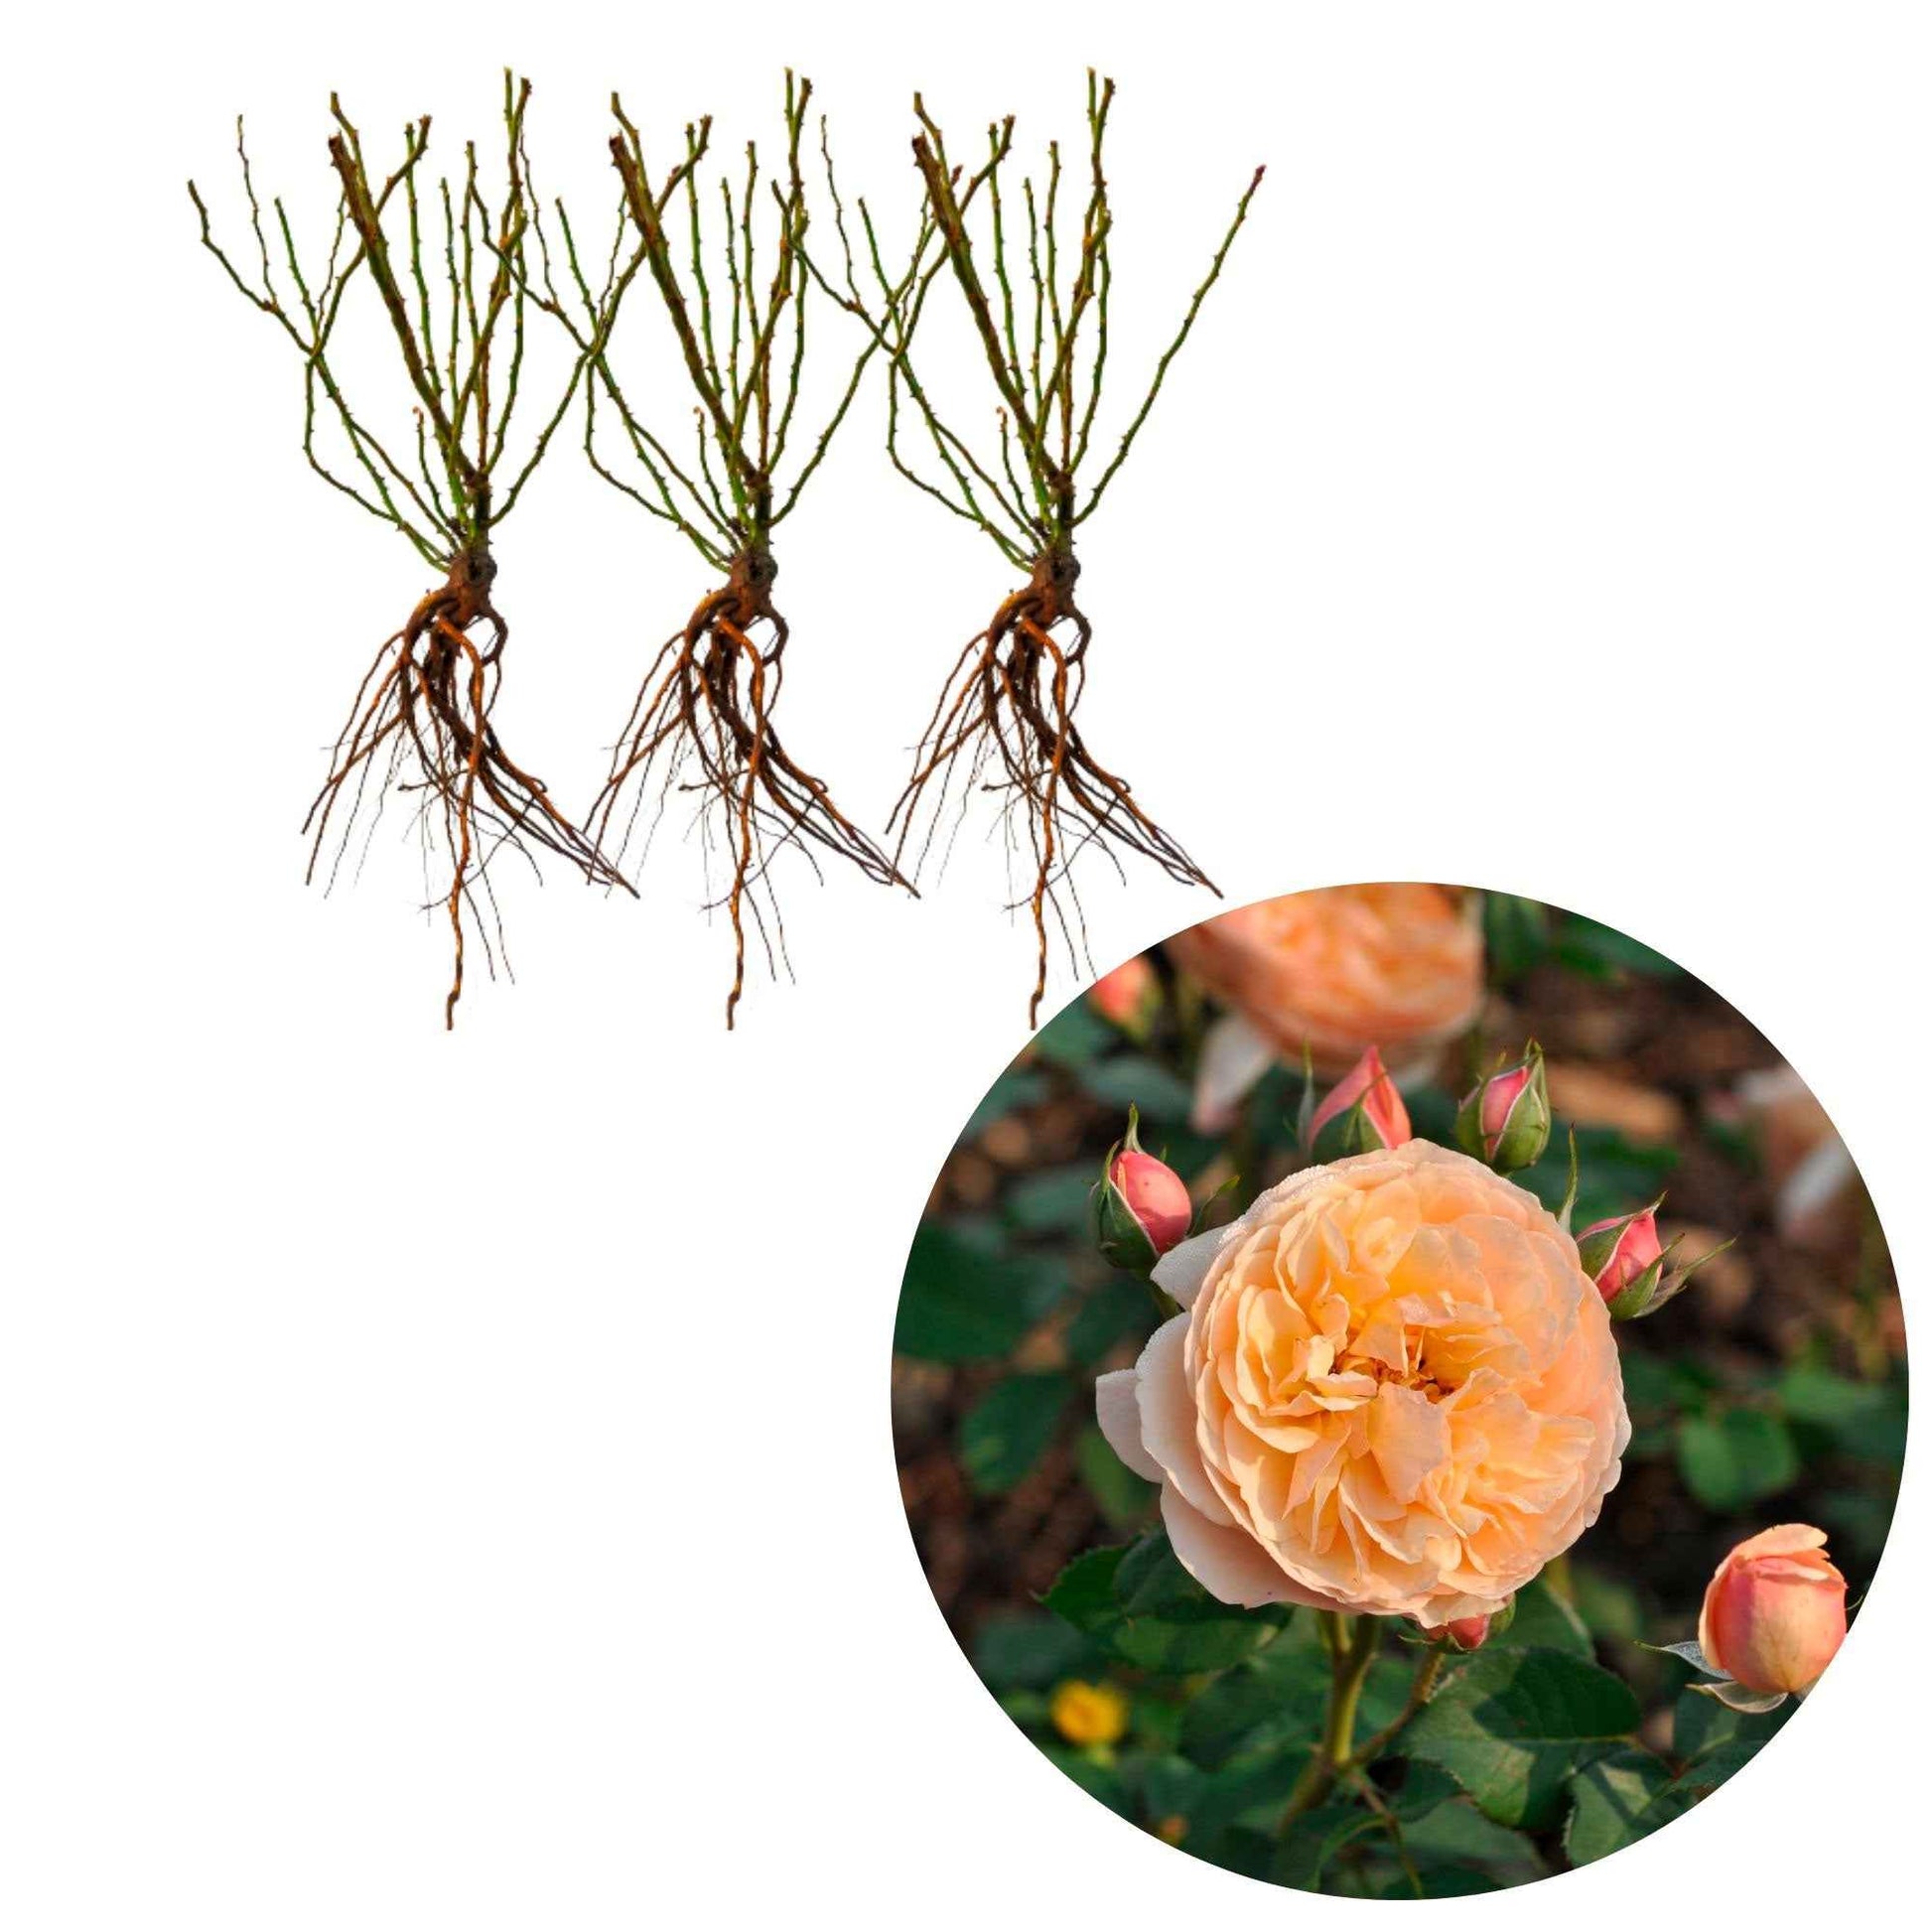 3x Roses Rosa 'Eveline Wild'® floribunda Rose  - Plants à racines nues - Plantes d'extérieur